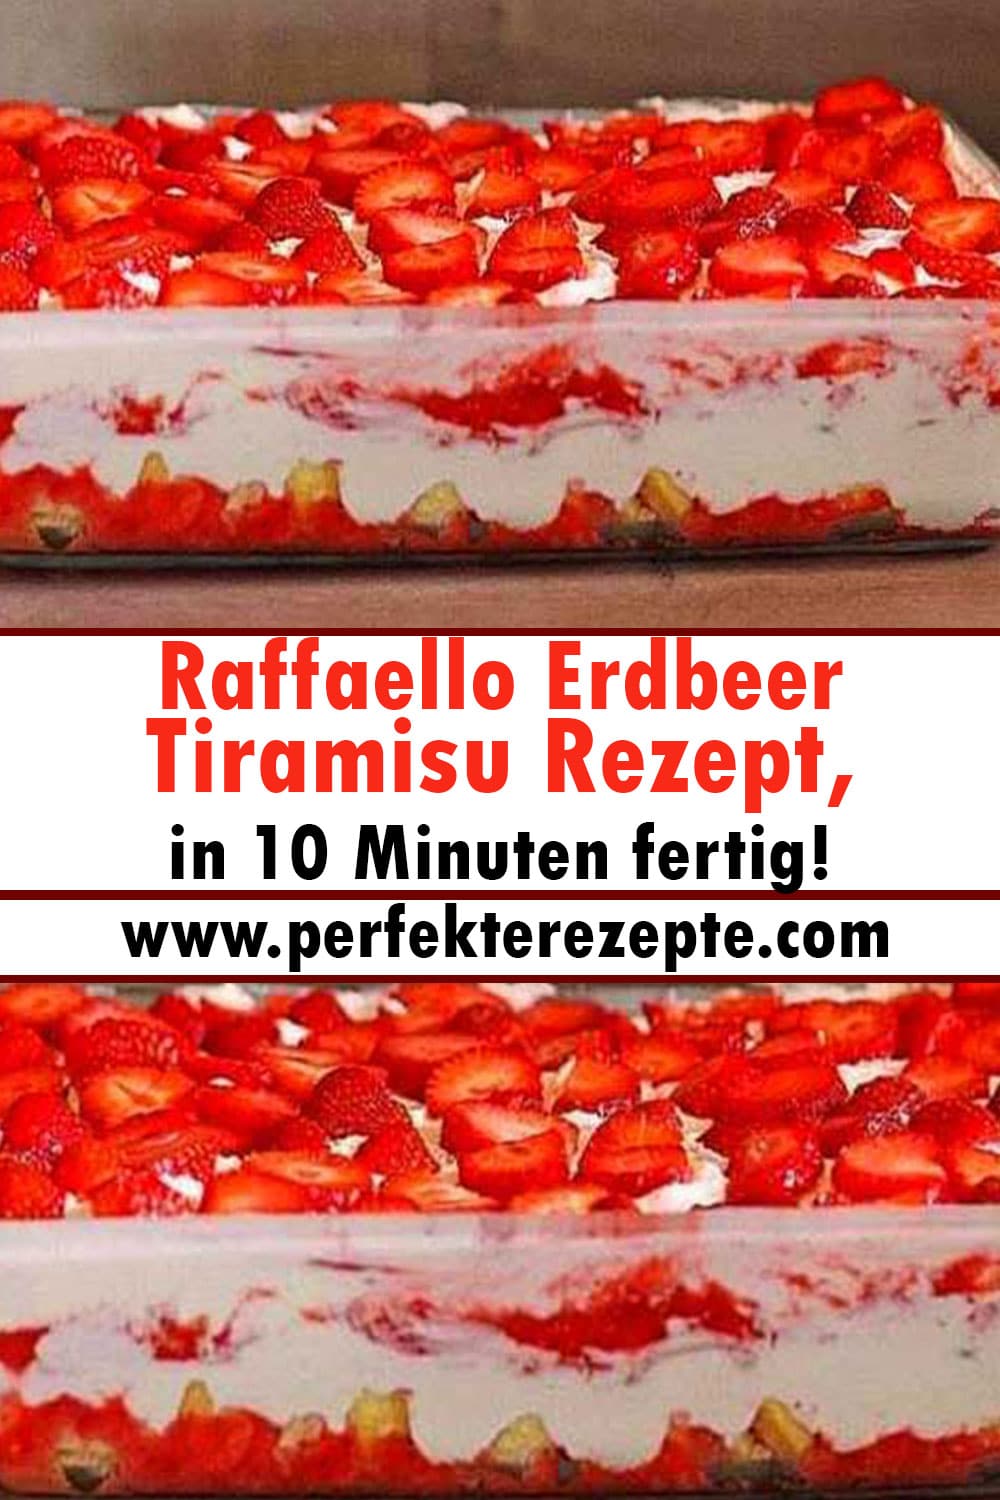 Raffaello Erdbeer Tiramisu Rezept, in 10 Minuten fertig!